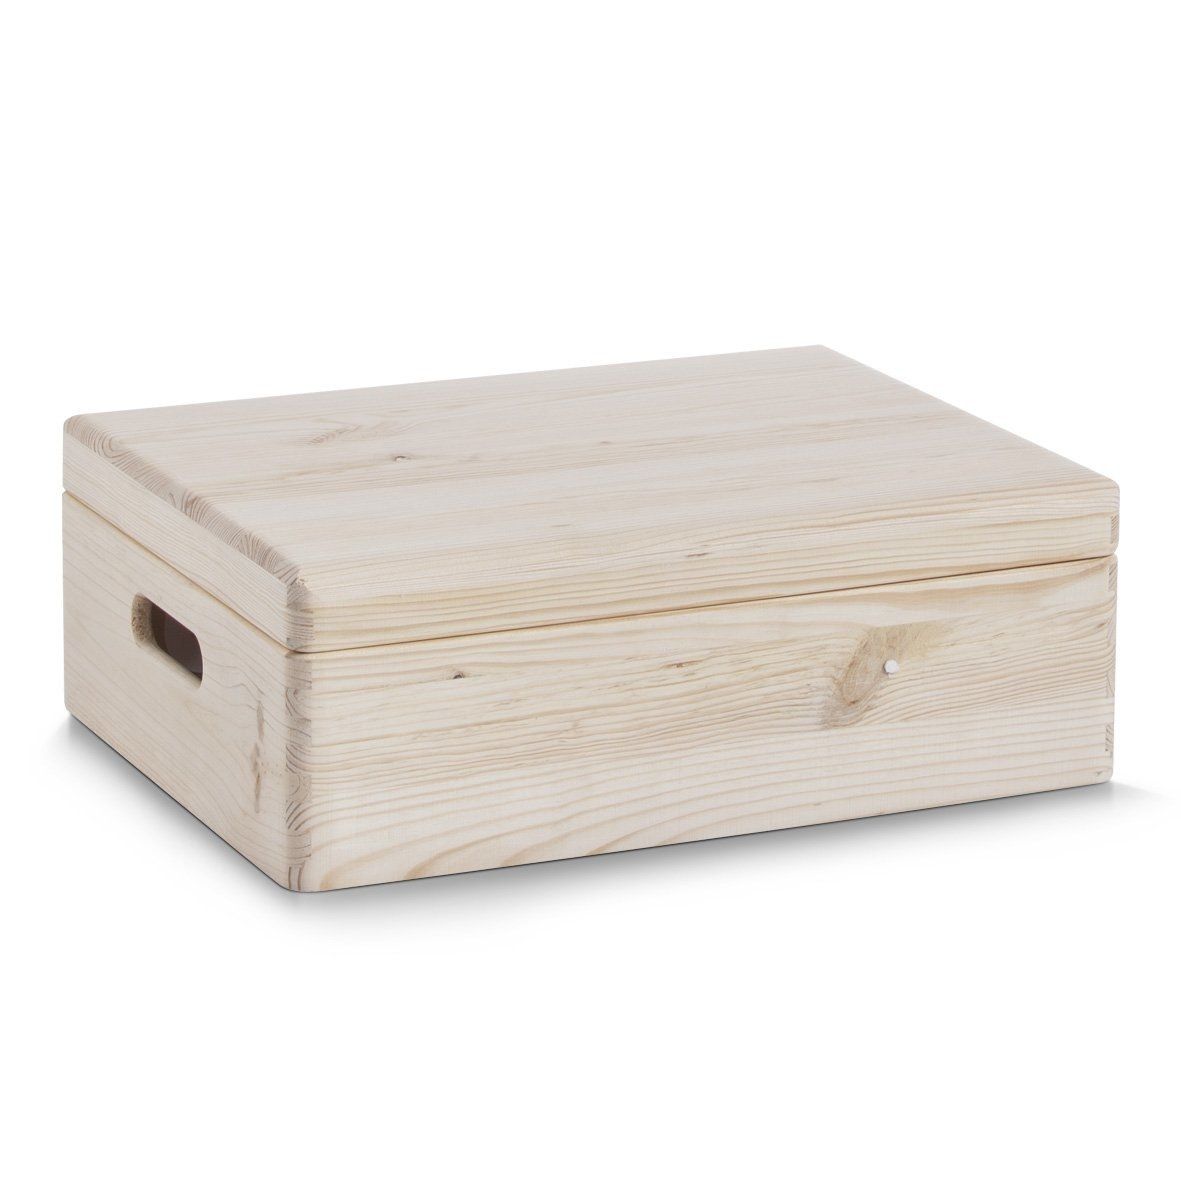 Skladovací kontejner, dřevěný borový box, s přihrádkami v ceně, Zeller - EMAKO.CZ s.r.o.